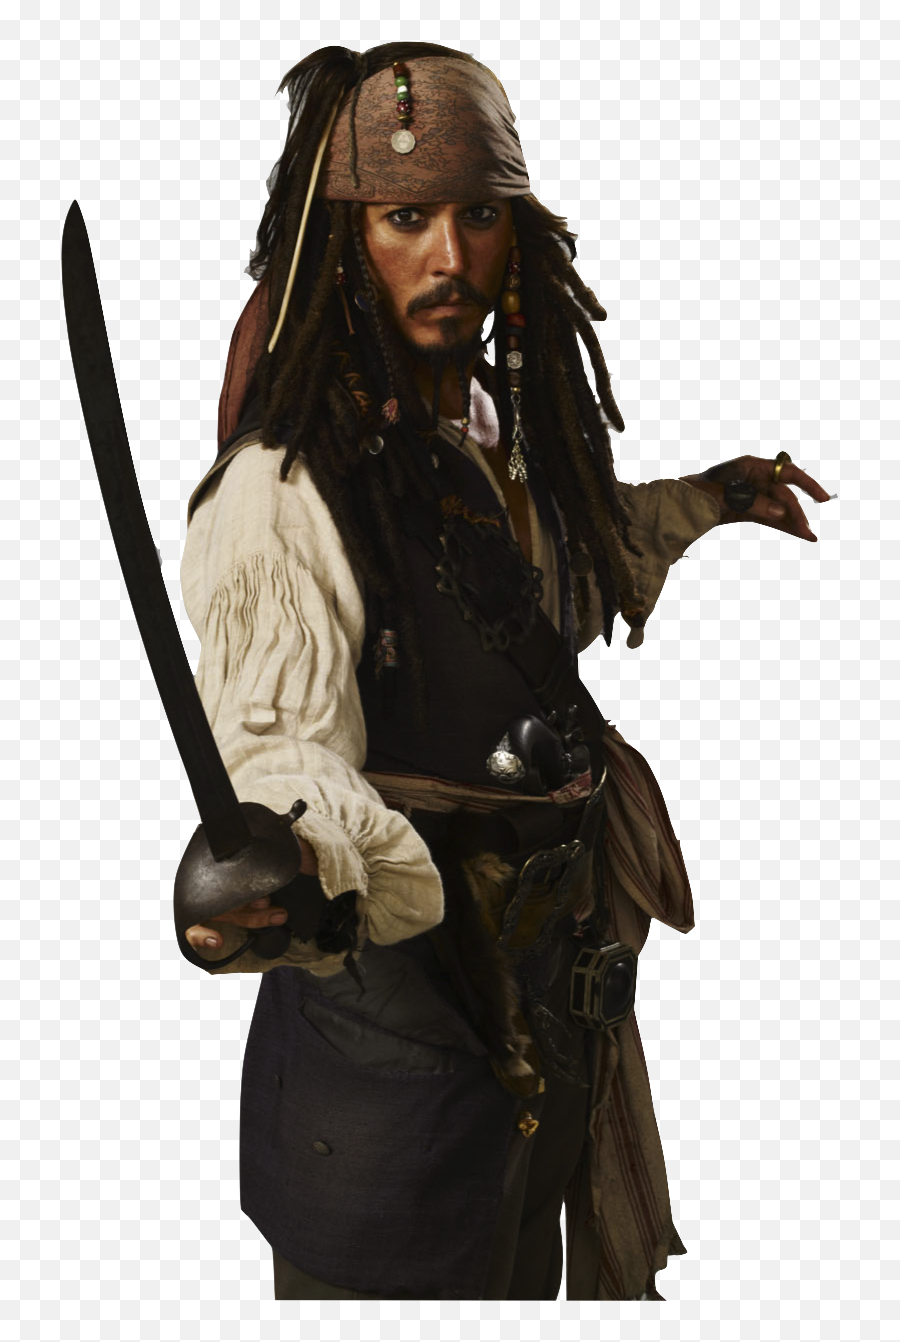 Captain Jack Sparrow Png Transparent - Captain Jack Sparrow Transparent,Johnny Depp Png